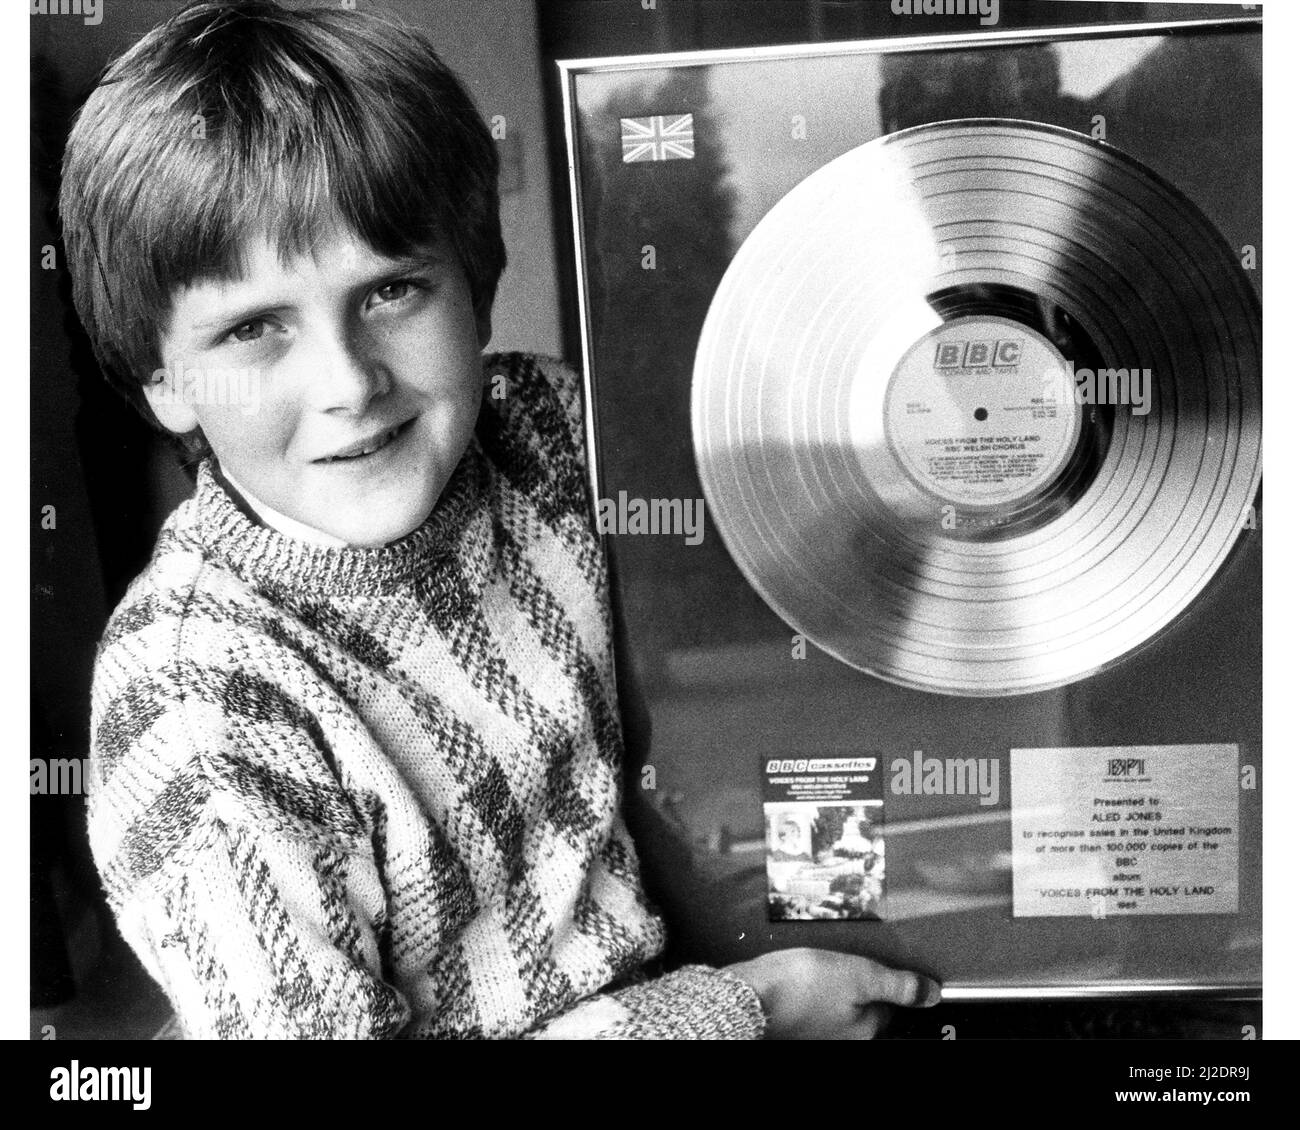 Aled Jones, ragazzo di 14 anni che cantò lo Snowman, "Walking in the Air". Aled che ha venduto più di 100,00 copie dell'album della BBC 'Voices from the Holy Land' nel Regno Unito. Visto qui con BBC LP disc.July 1985. Foto Stock